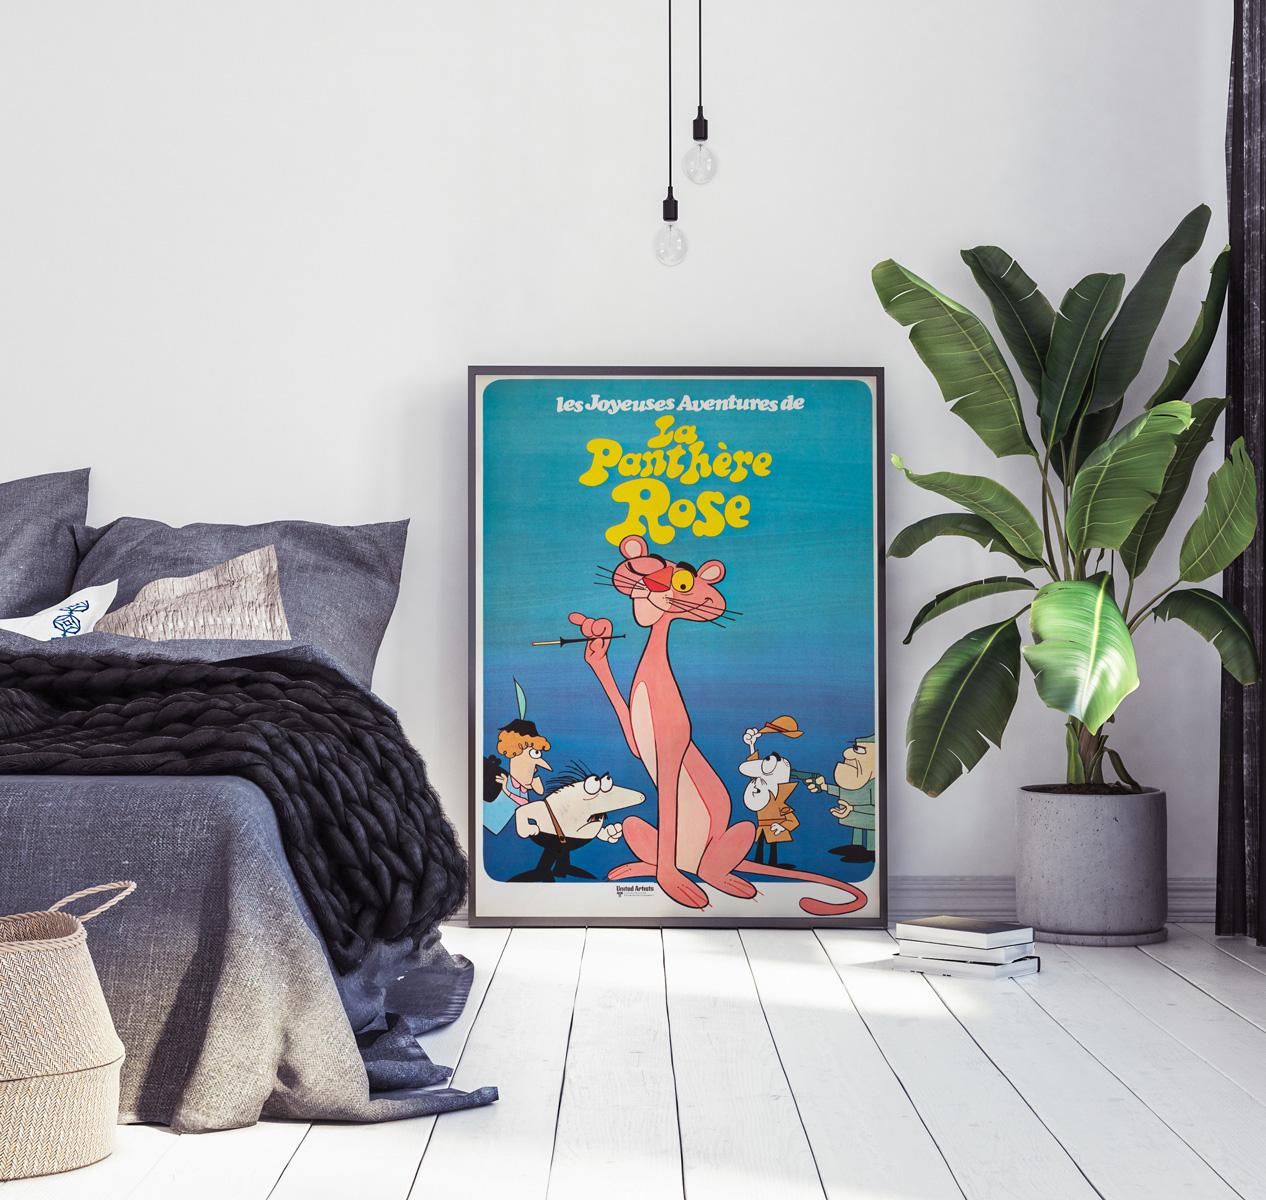 Nous adorons cette affiche de film française originale datant de 1970 pour une exploitation cinématographique de la série d'animation La panthère rose en France.

Cette affiche vintage a été professionnellement doublée de lin et mesure 23 x 31